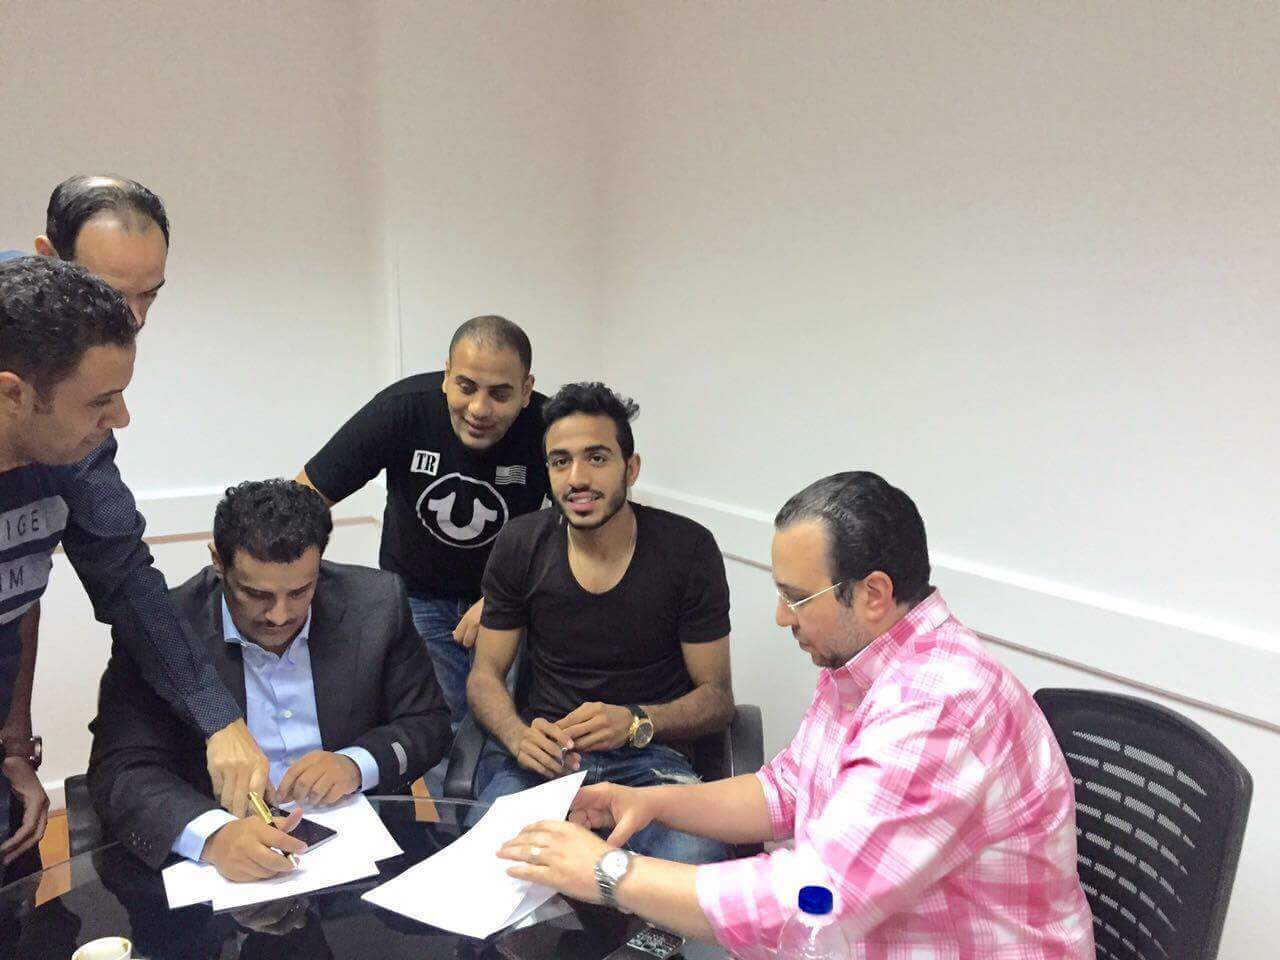 قرار عاجل من اتحاد كرة القدم المصري بشأن أزمة الزمالك وكهربا